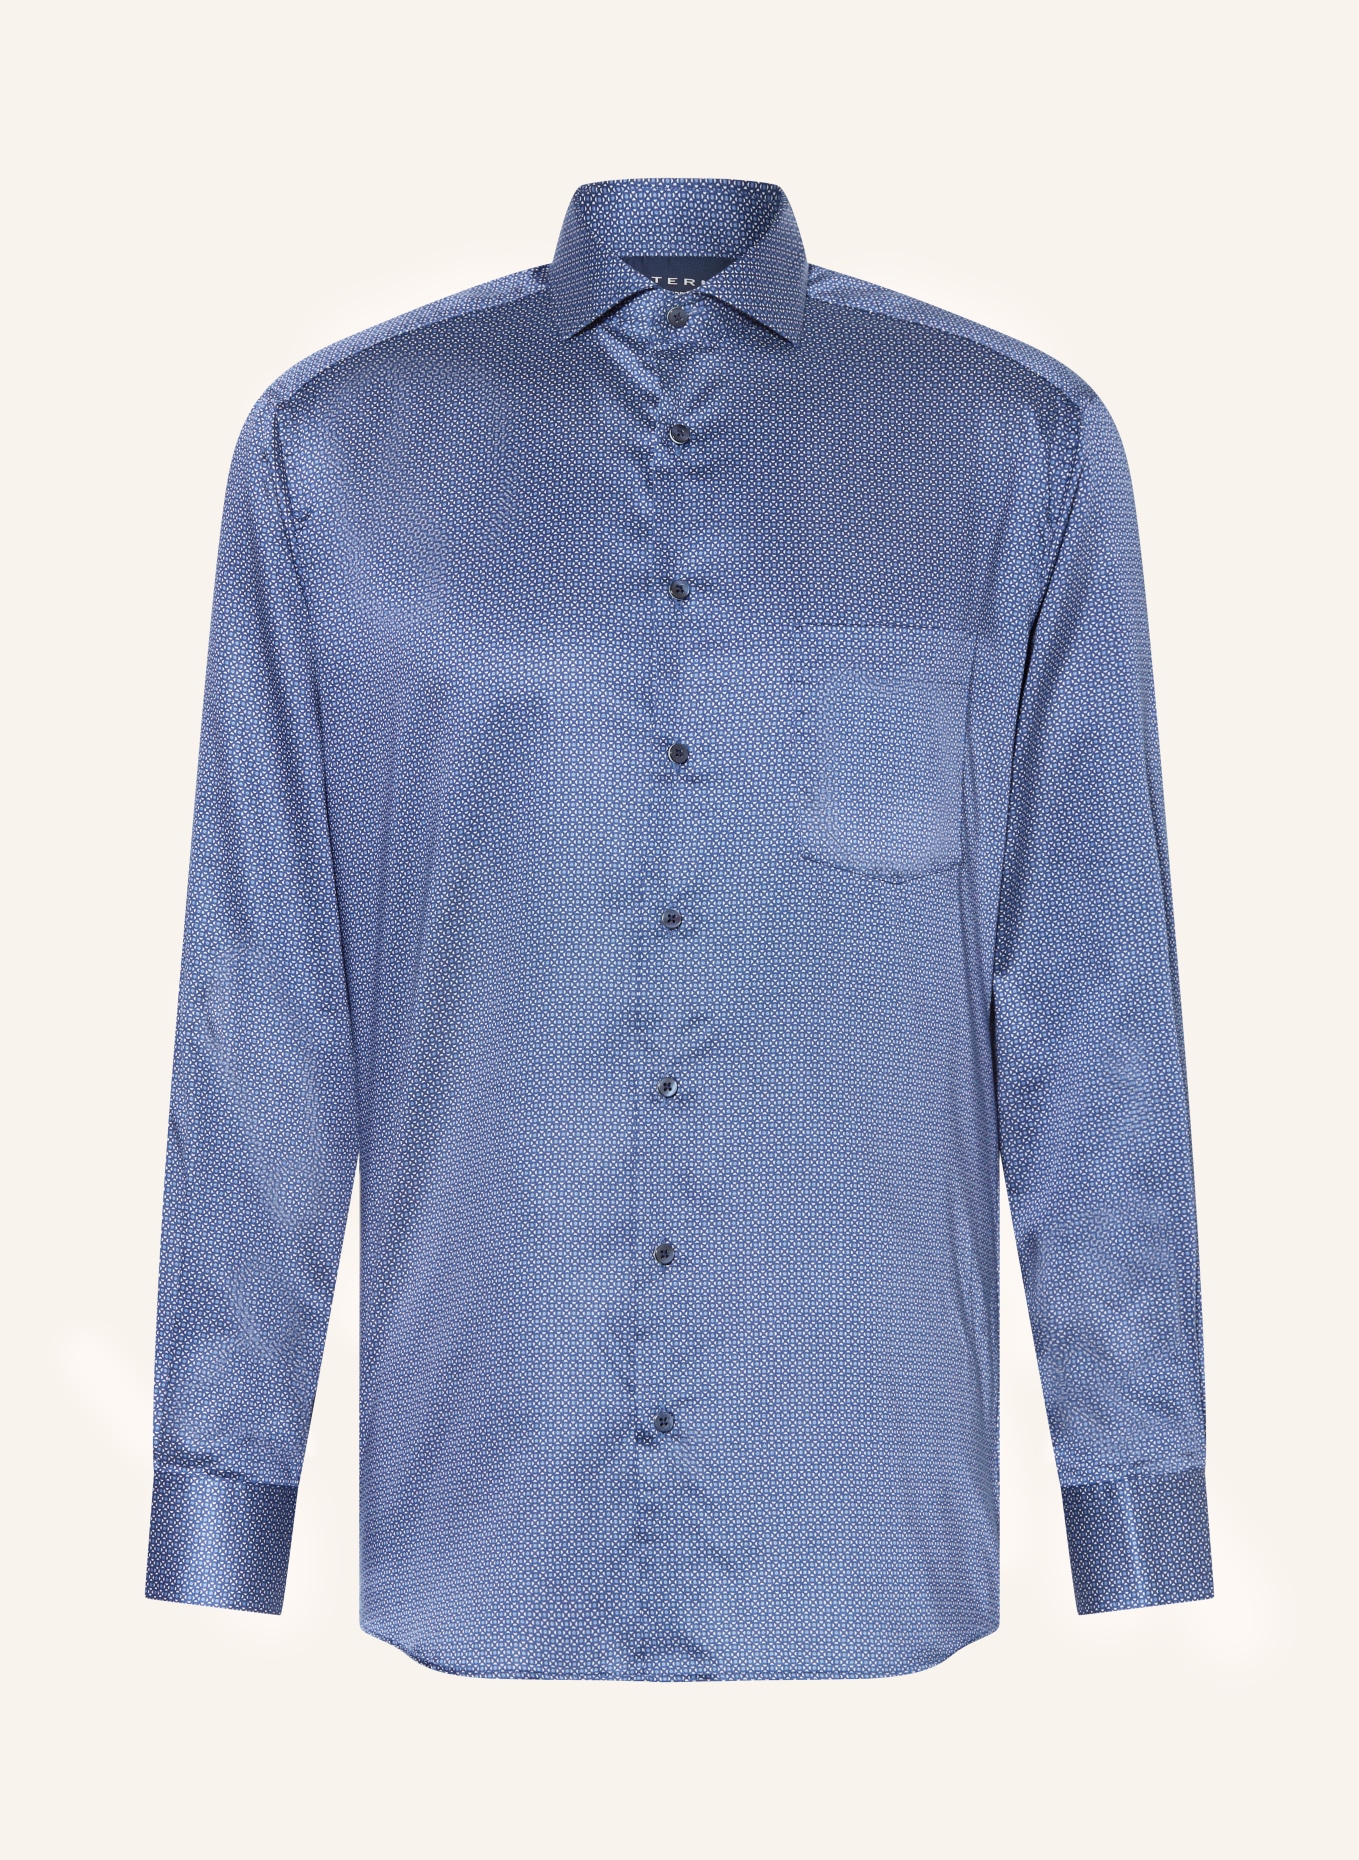 ETERNA Shirt modern fit in dark blue/ blue/ white